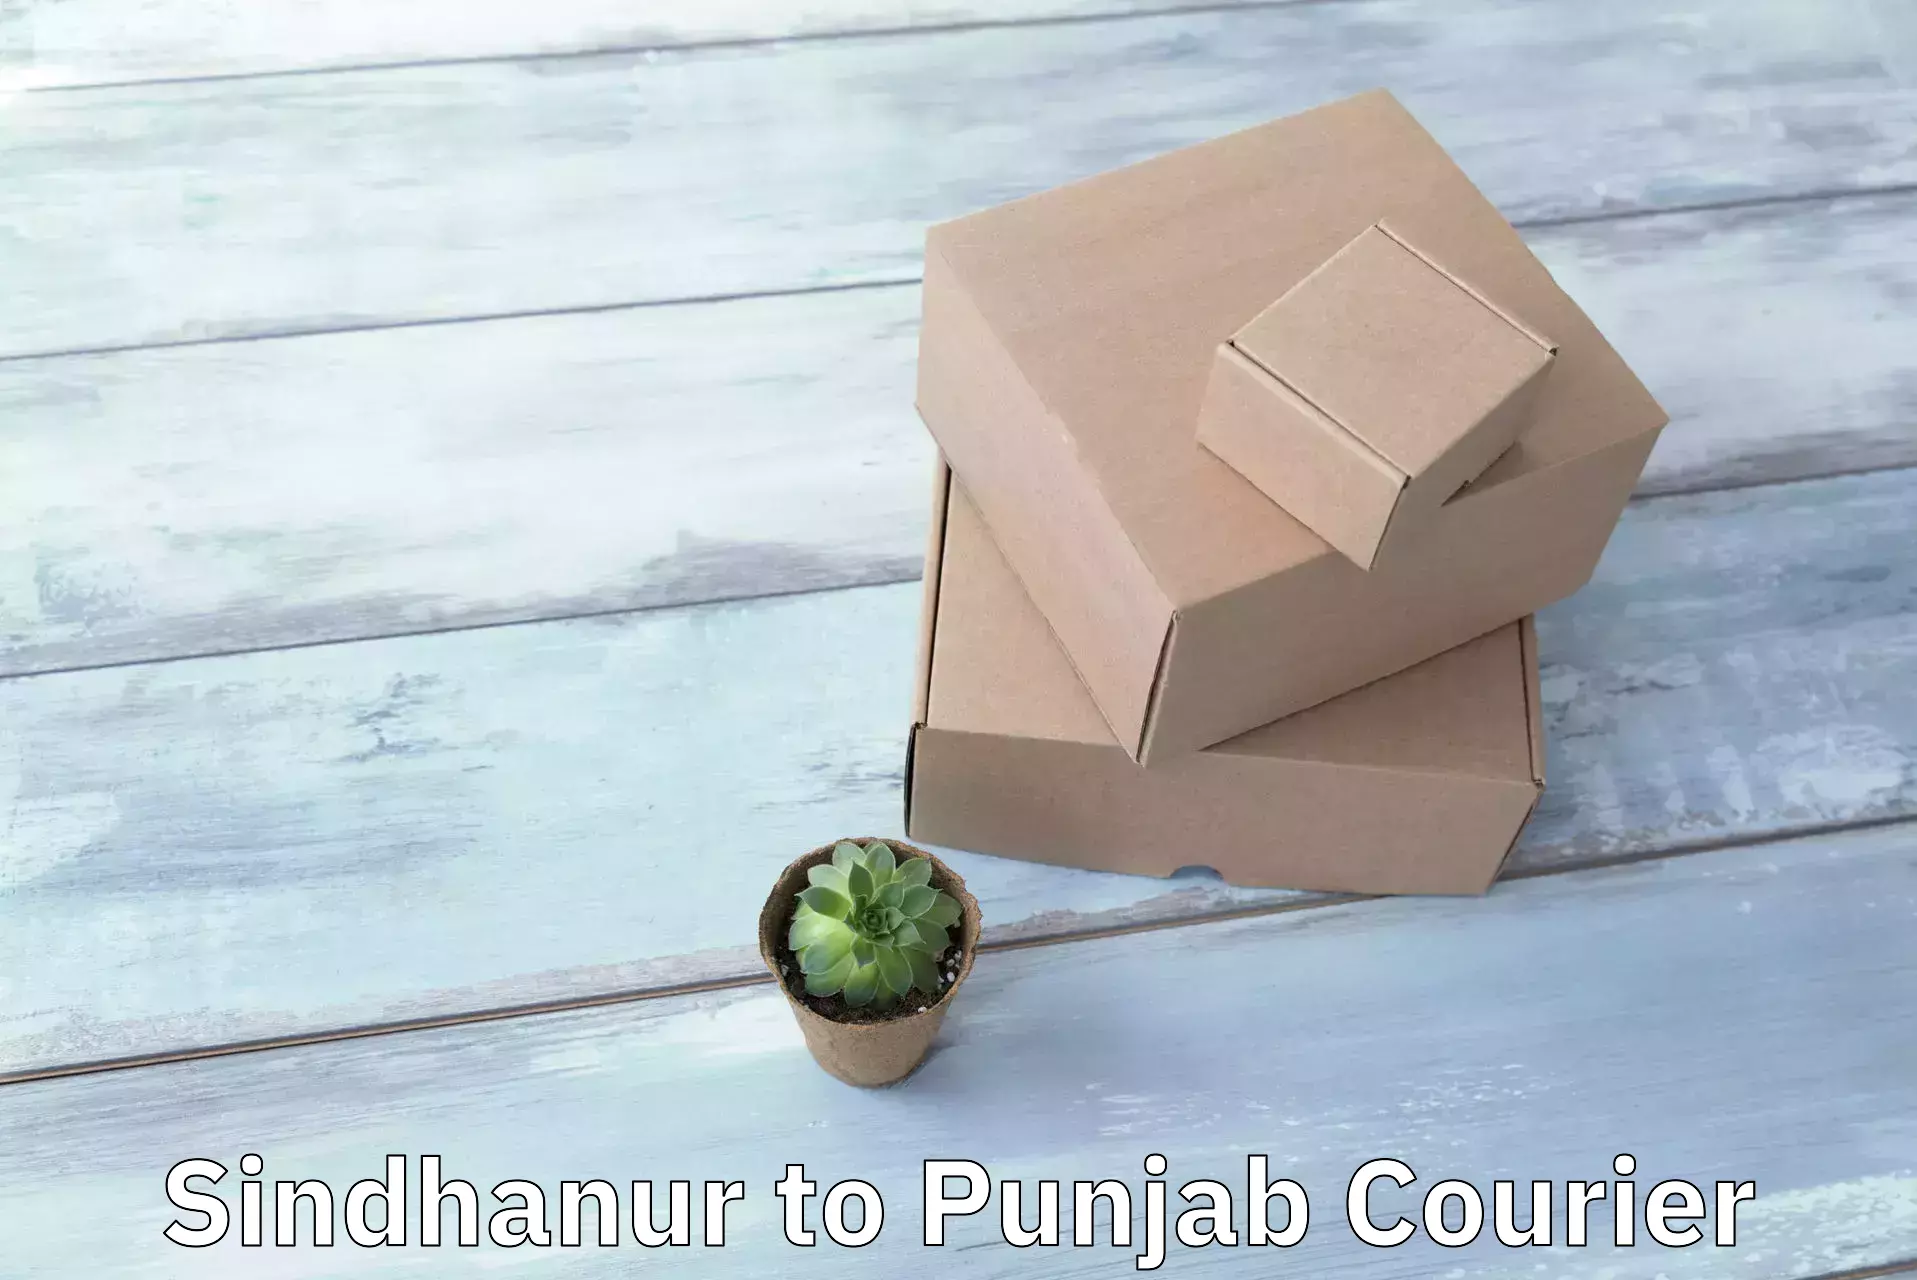 Large package courier Sindhanur to Patti Tarn Tara